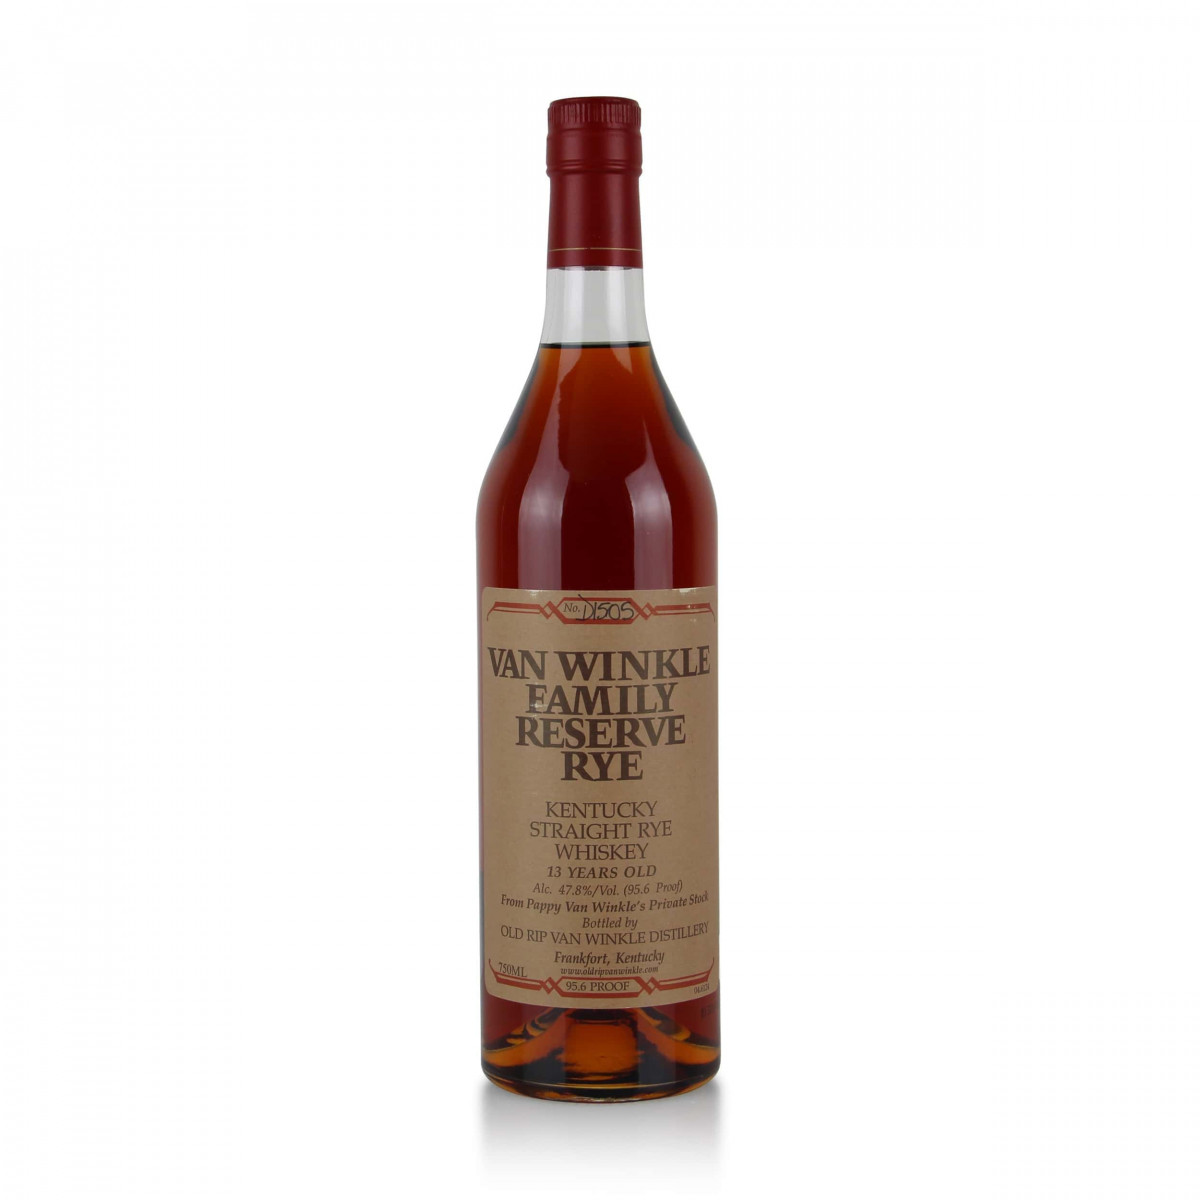 2013 bottle of Van Winkle Rye